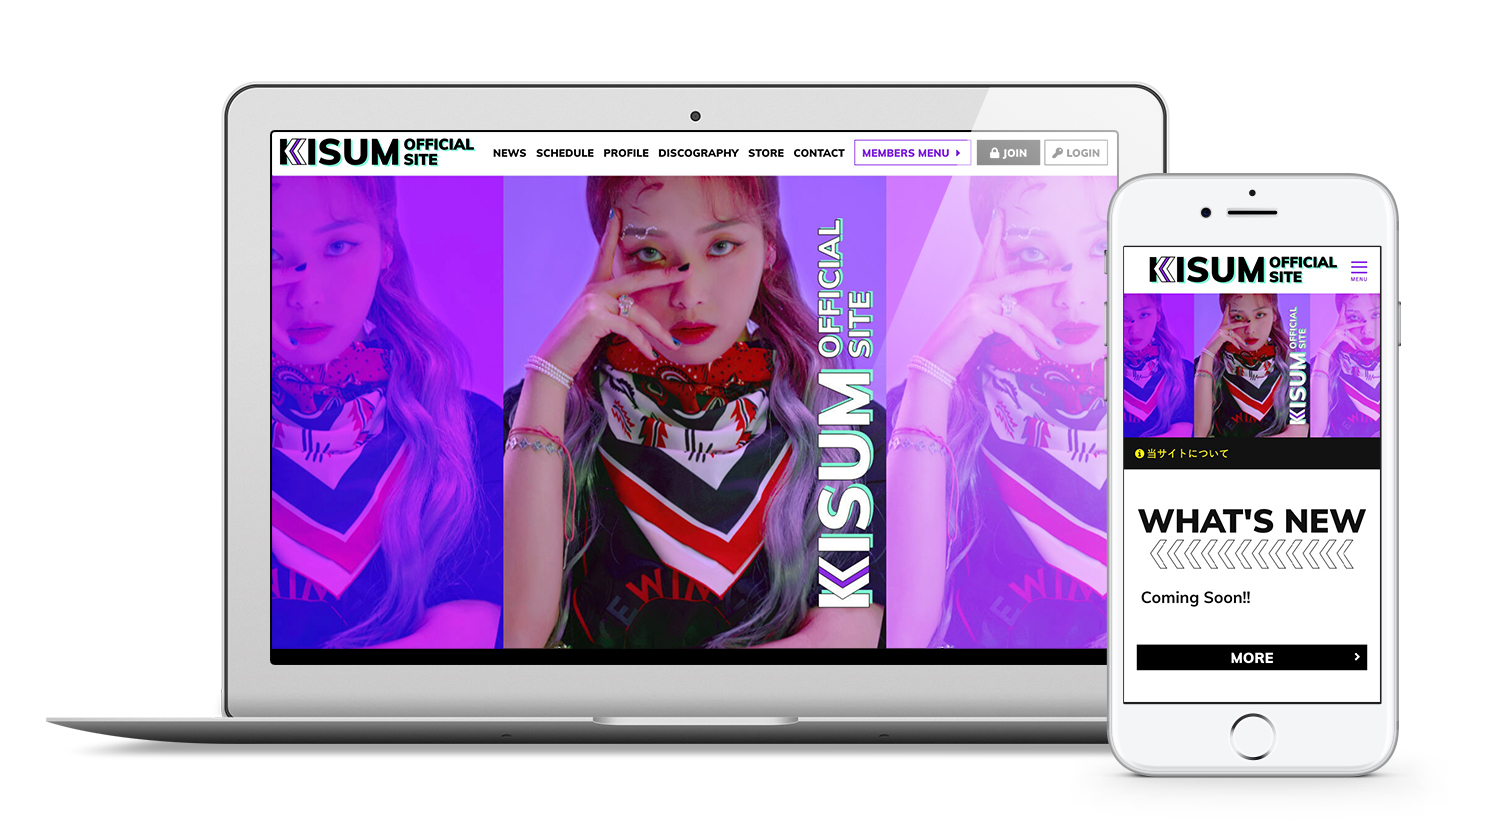 韓国の女性ラッパー Kisumの公式ファンクラブをオープン 株式会社skiyaki ファンサイト ファンクラブ ストアサイト運営